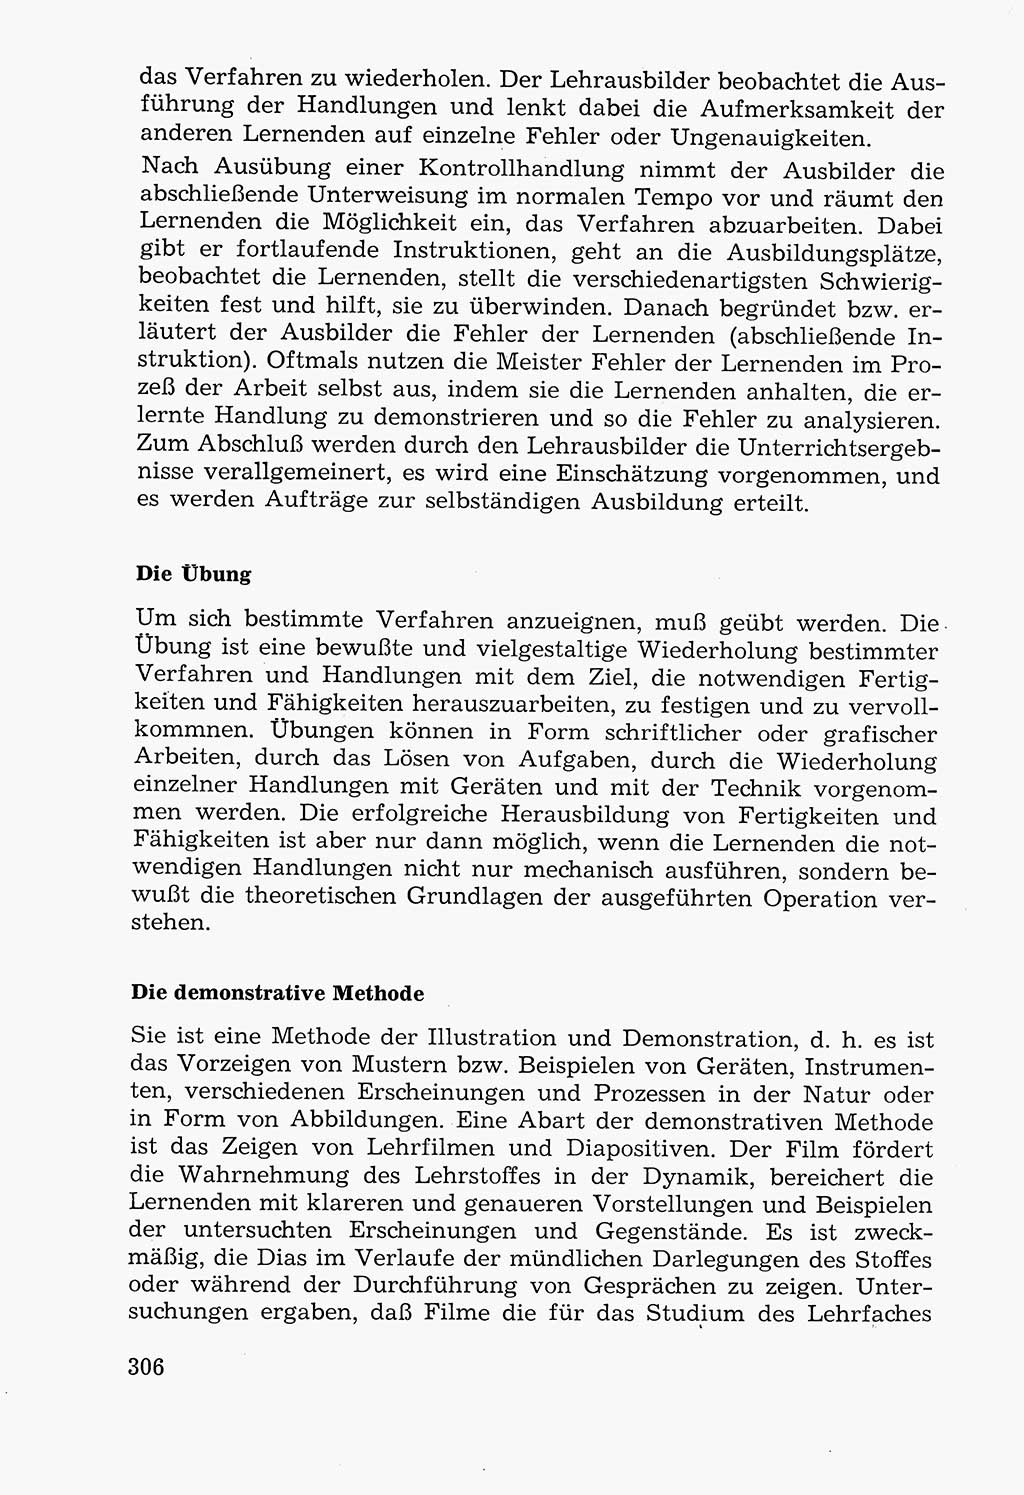 Lehrbuch der Strafvollzugspädagogik [Deutsche Demokratische Republik (DDR)] 1969, Seite 306 (Lb. SV-Pd. DDR 1969, S. 306)